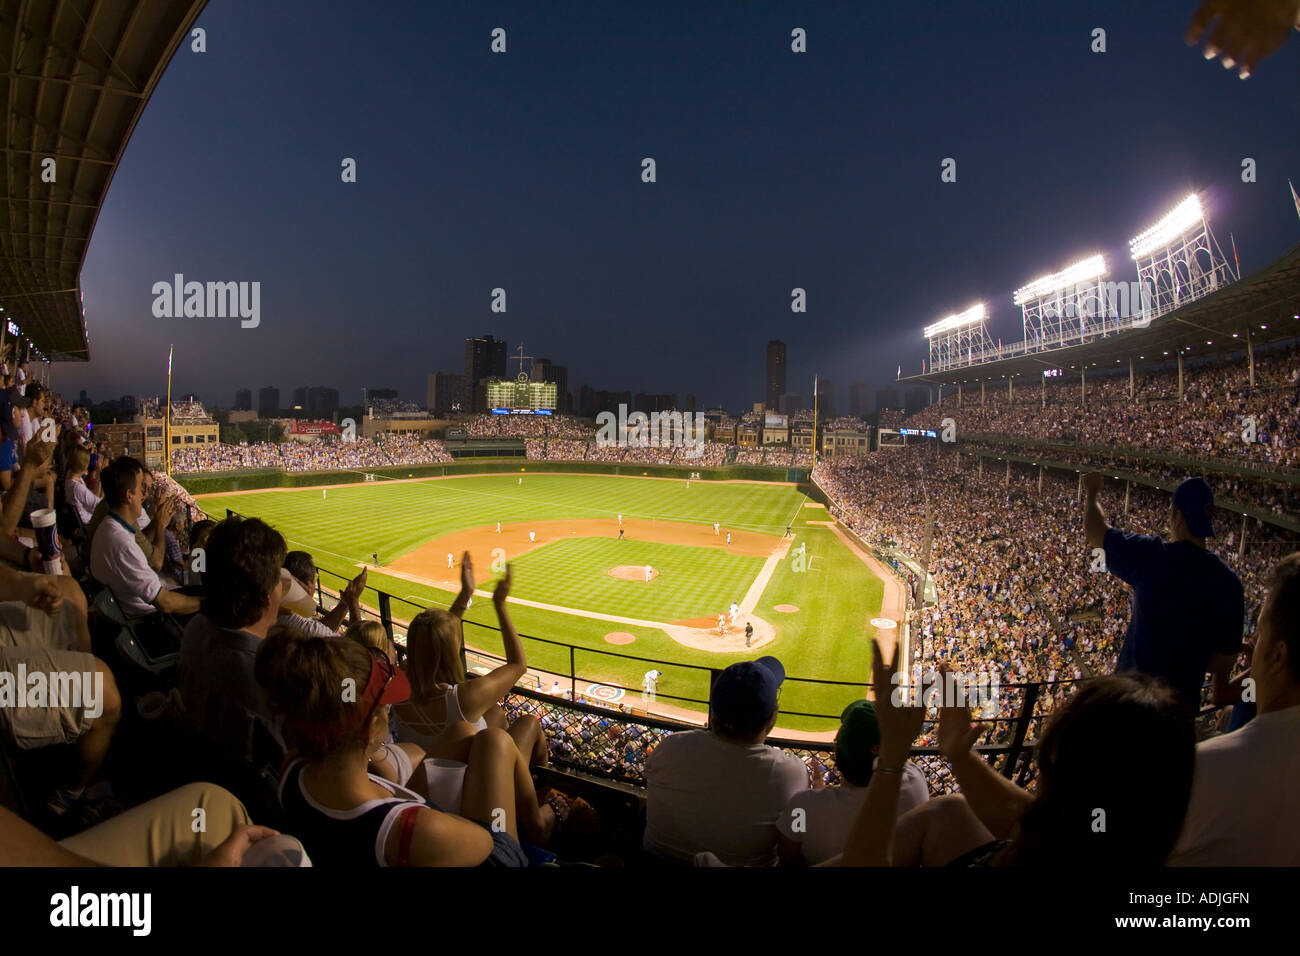 L'ILLINOIS Chicago jeu nuit à Wrigley Field view de stands et champ avec objectif fisheye fans applaudissant et acclamant Banque D'Images